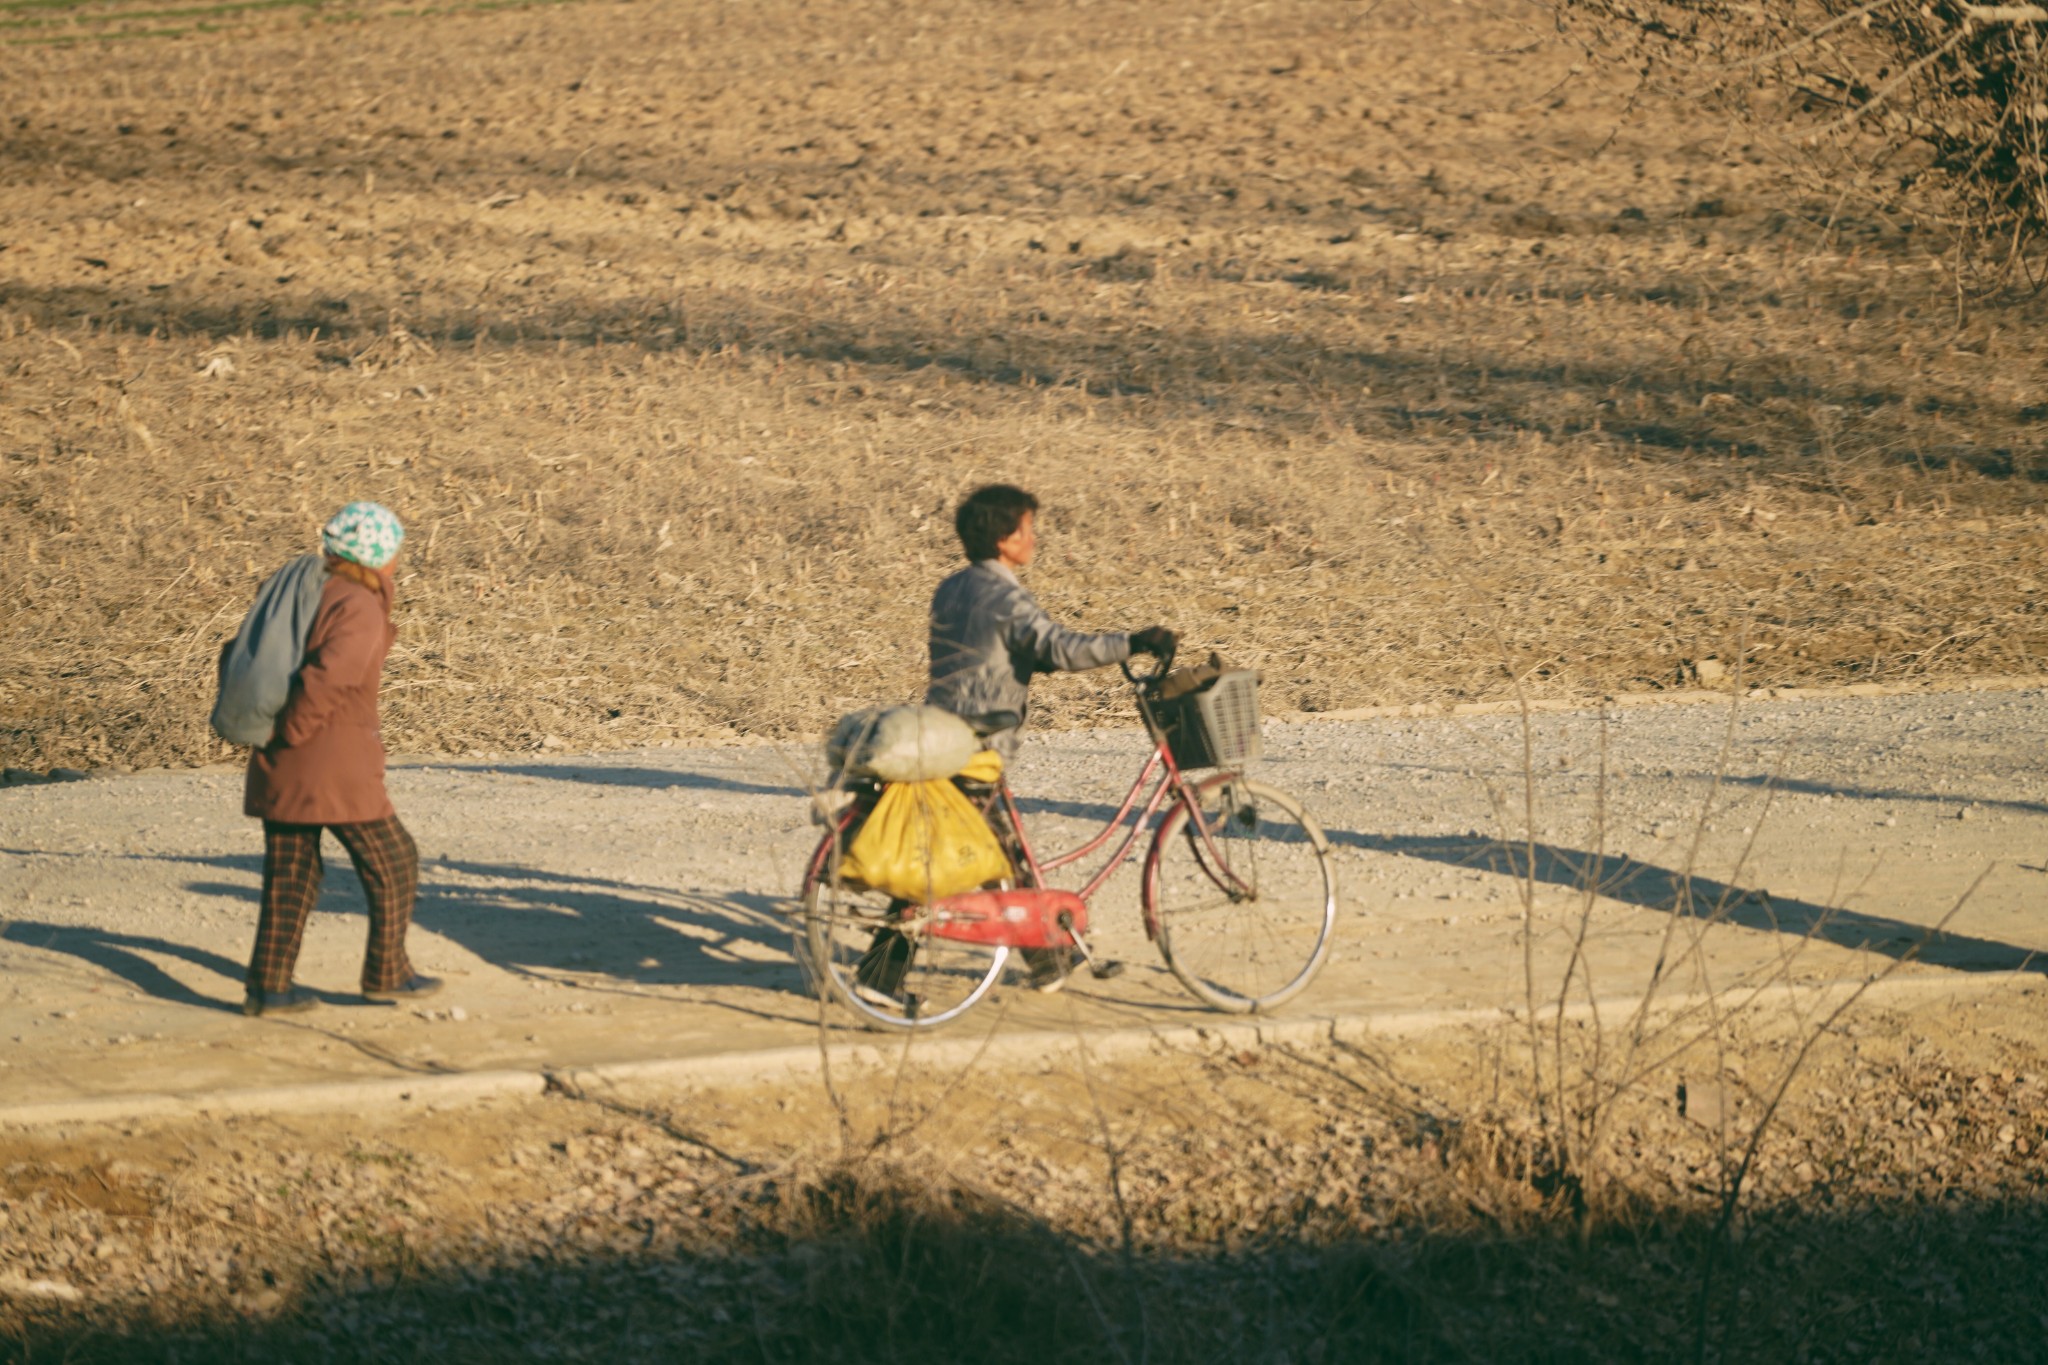 朝鲜视觉:走进朝鲜农村,拍摄当地农民日常生活!